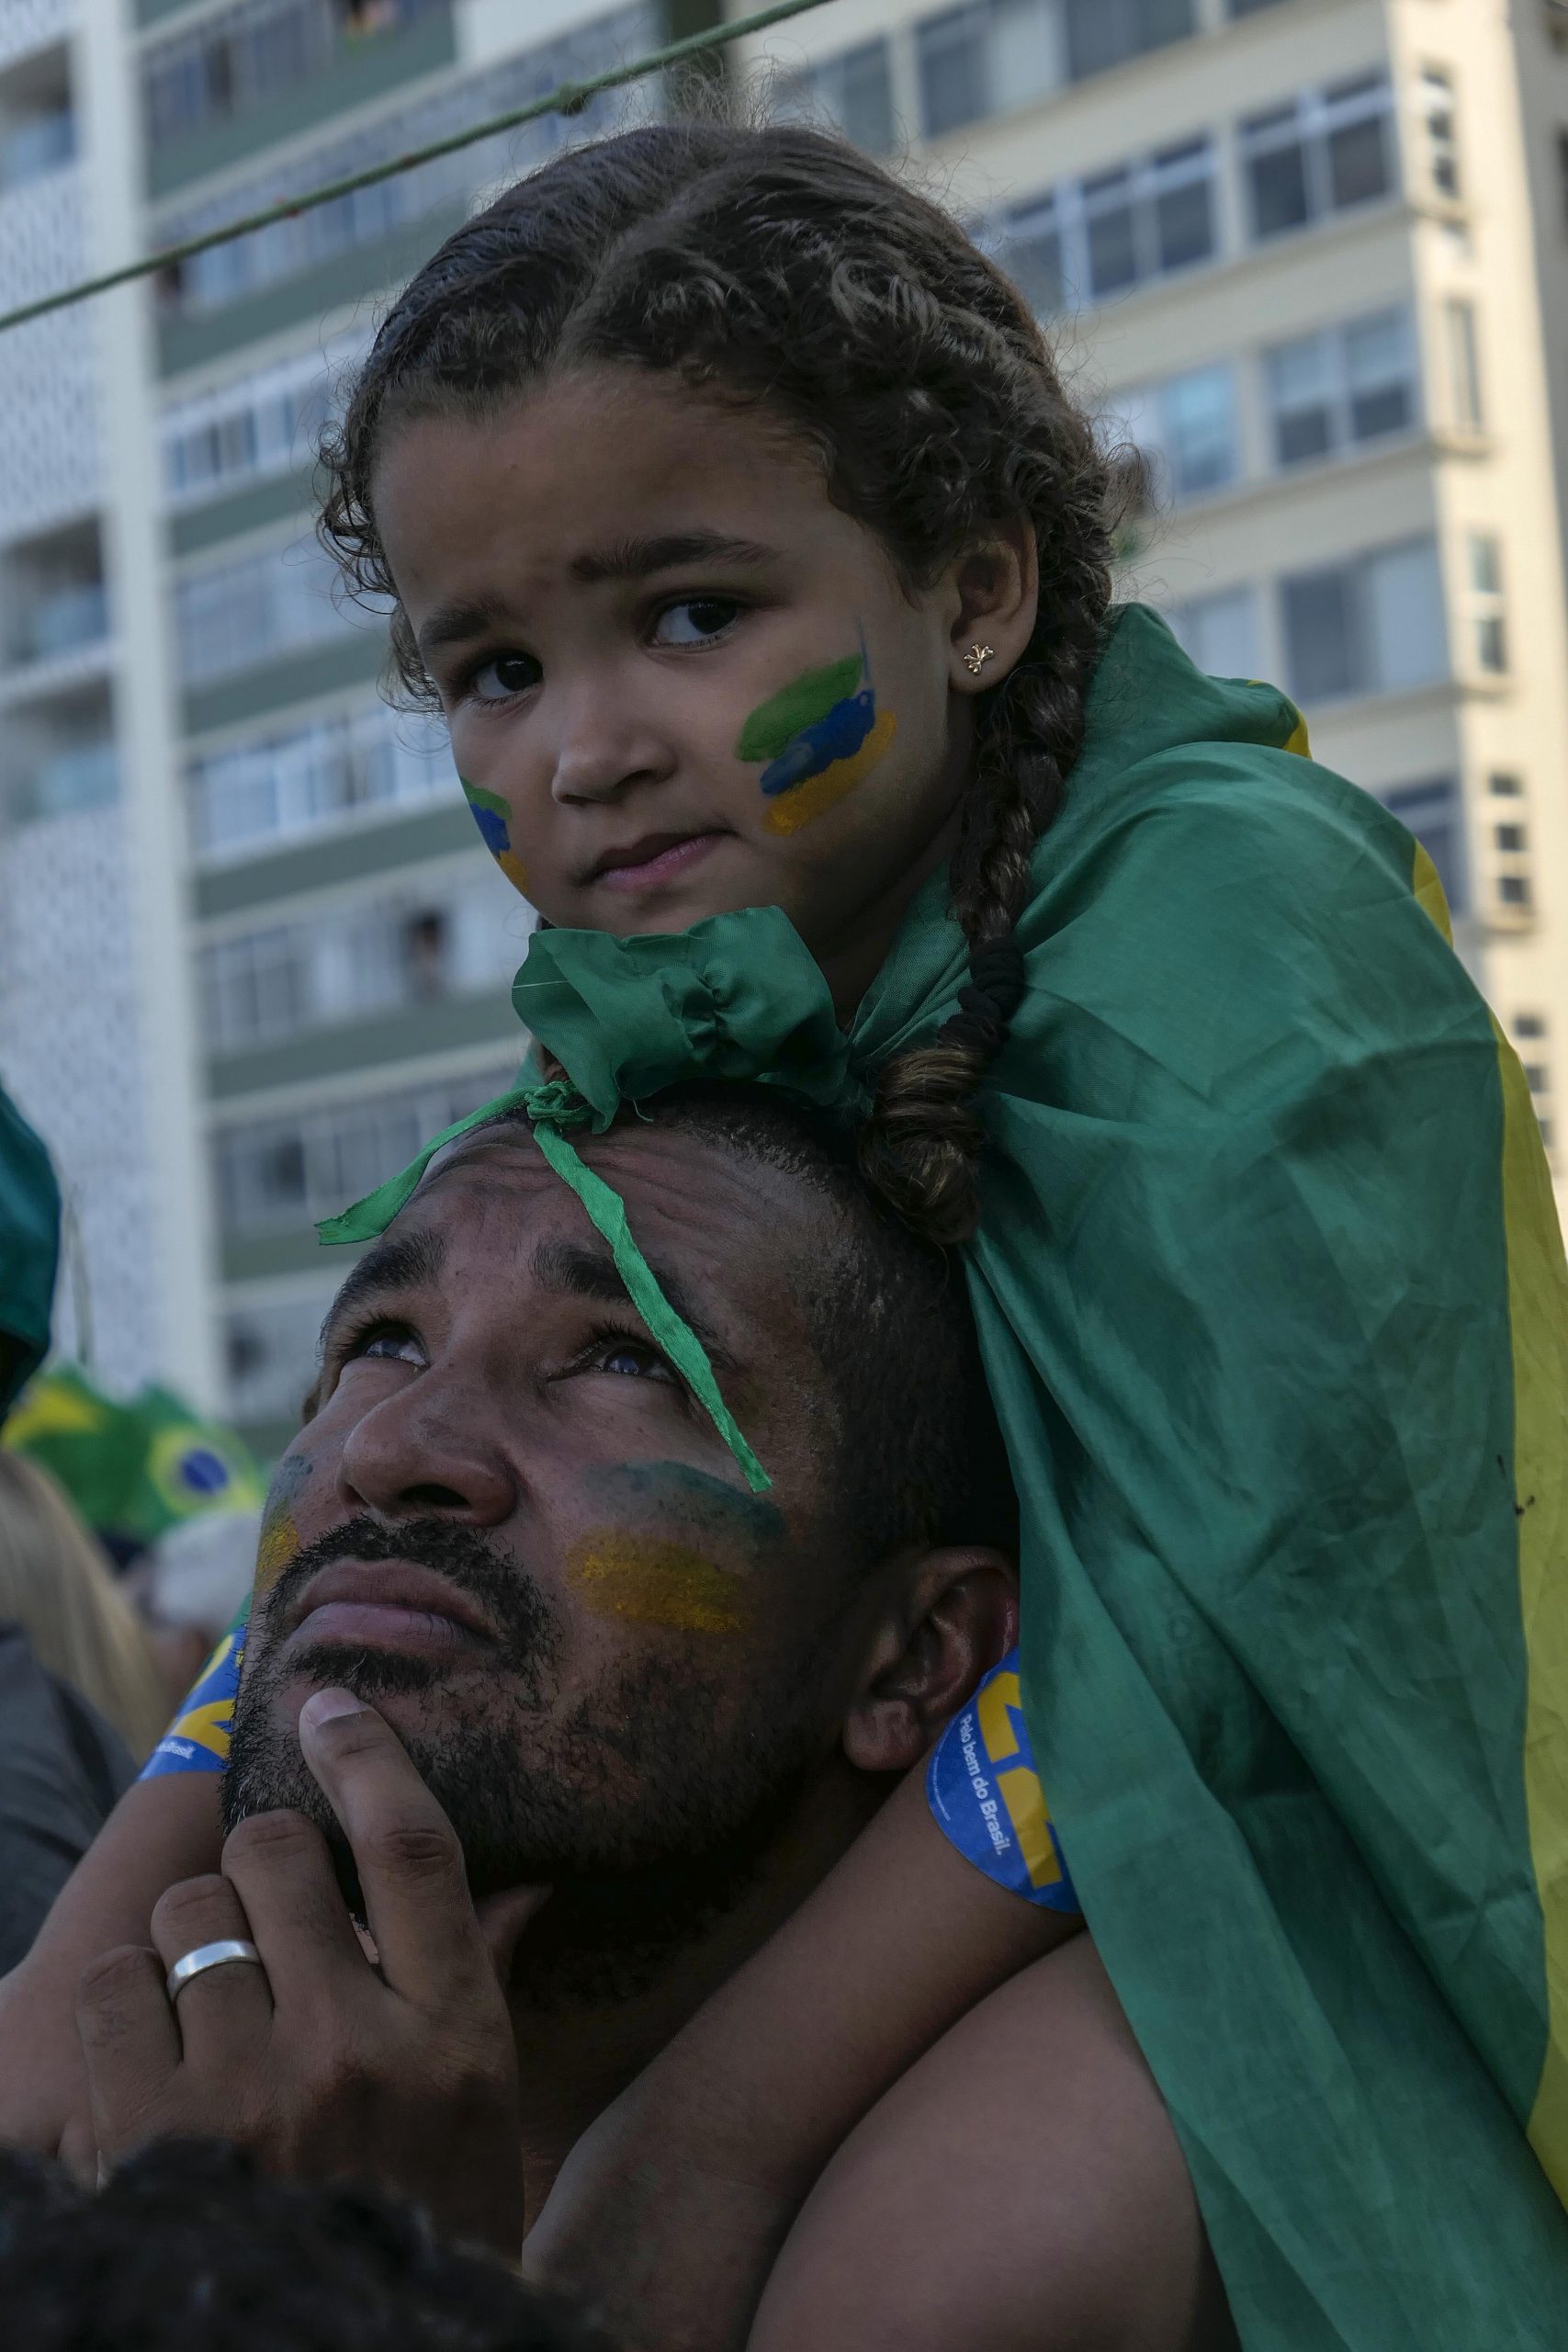 "Imbrochável"? Hoje, Bolsonaro mostrou força! E não foi pouca - Fotos: Marlene Bergamo